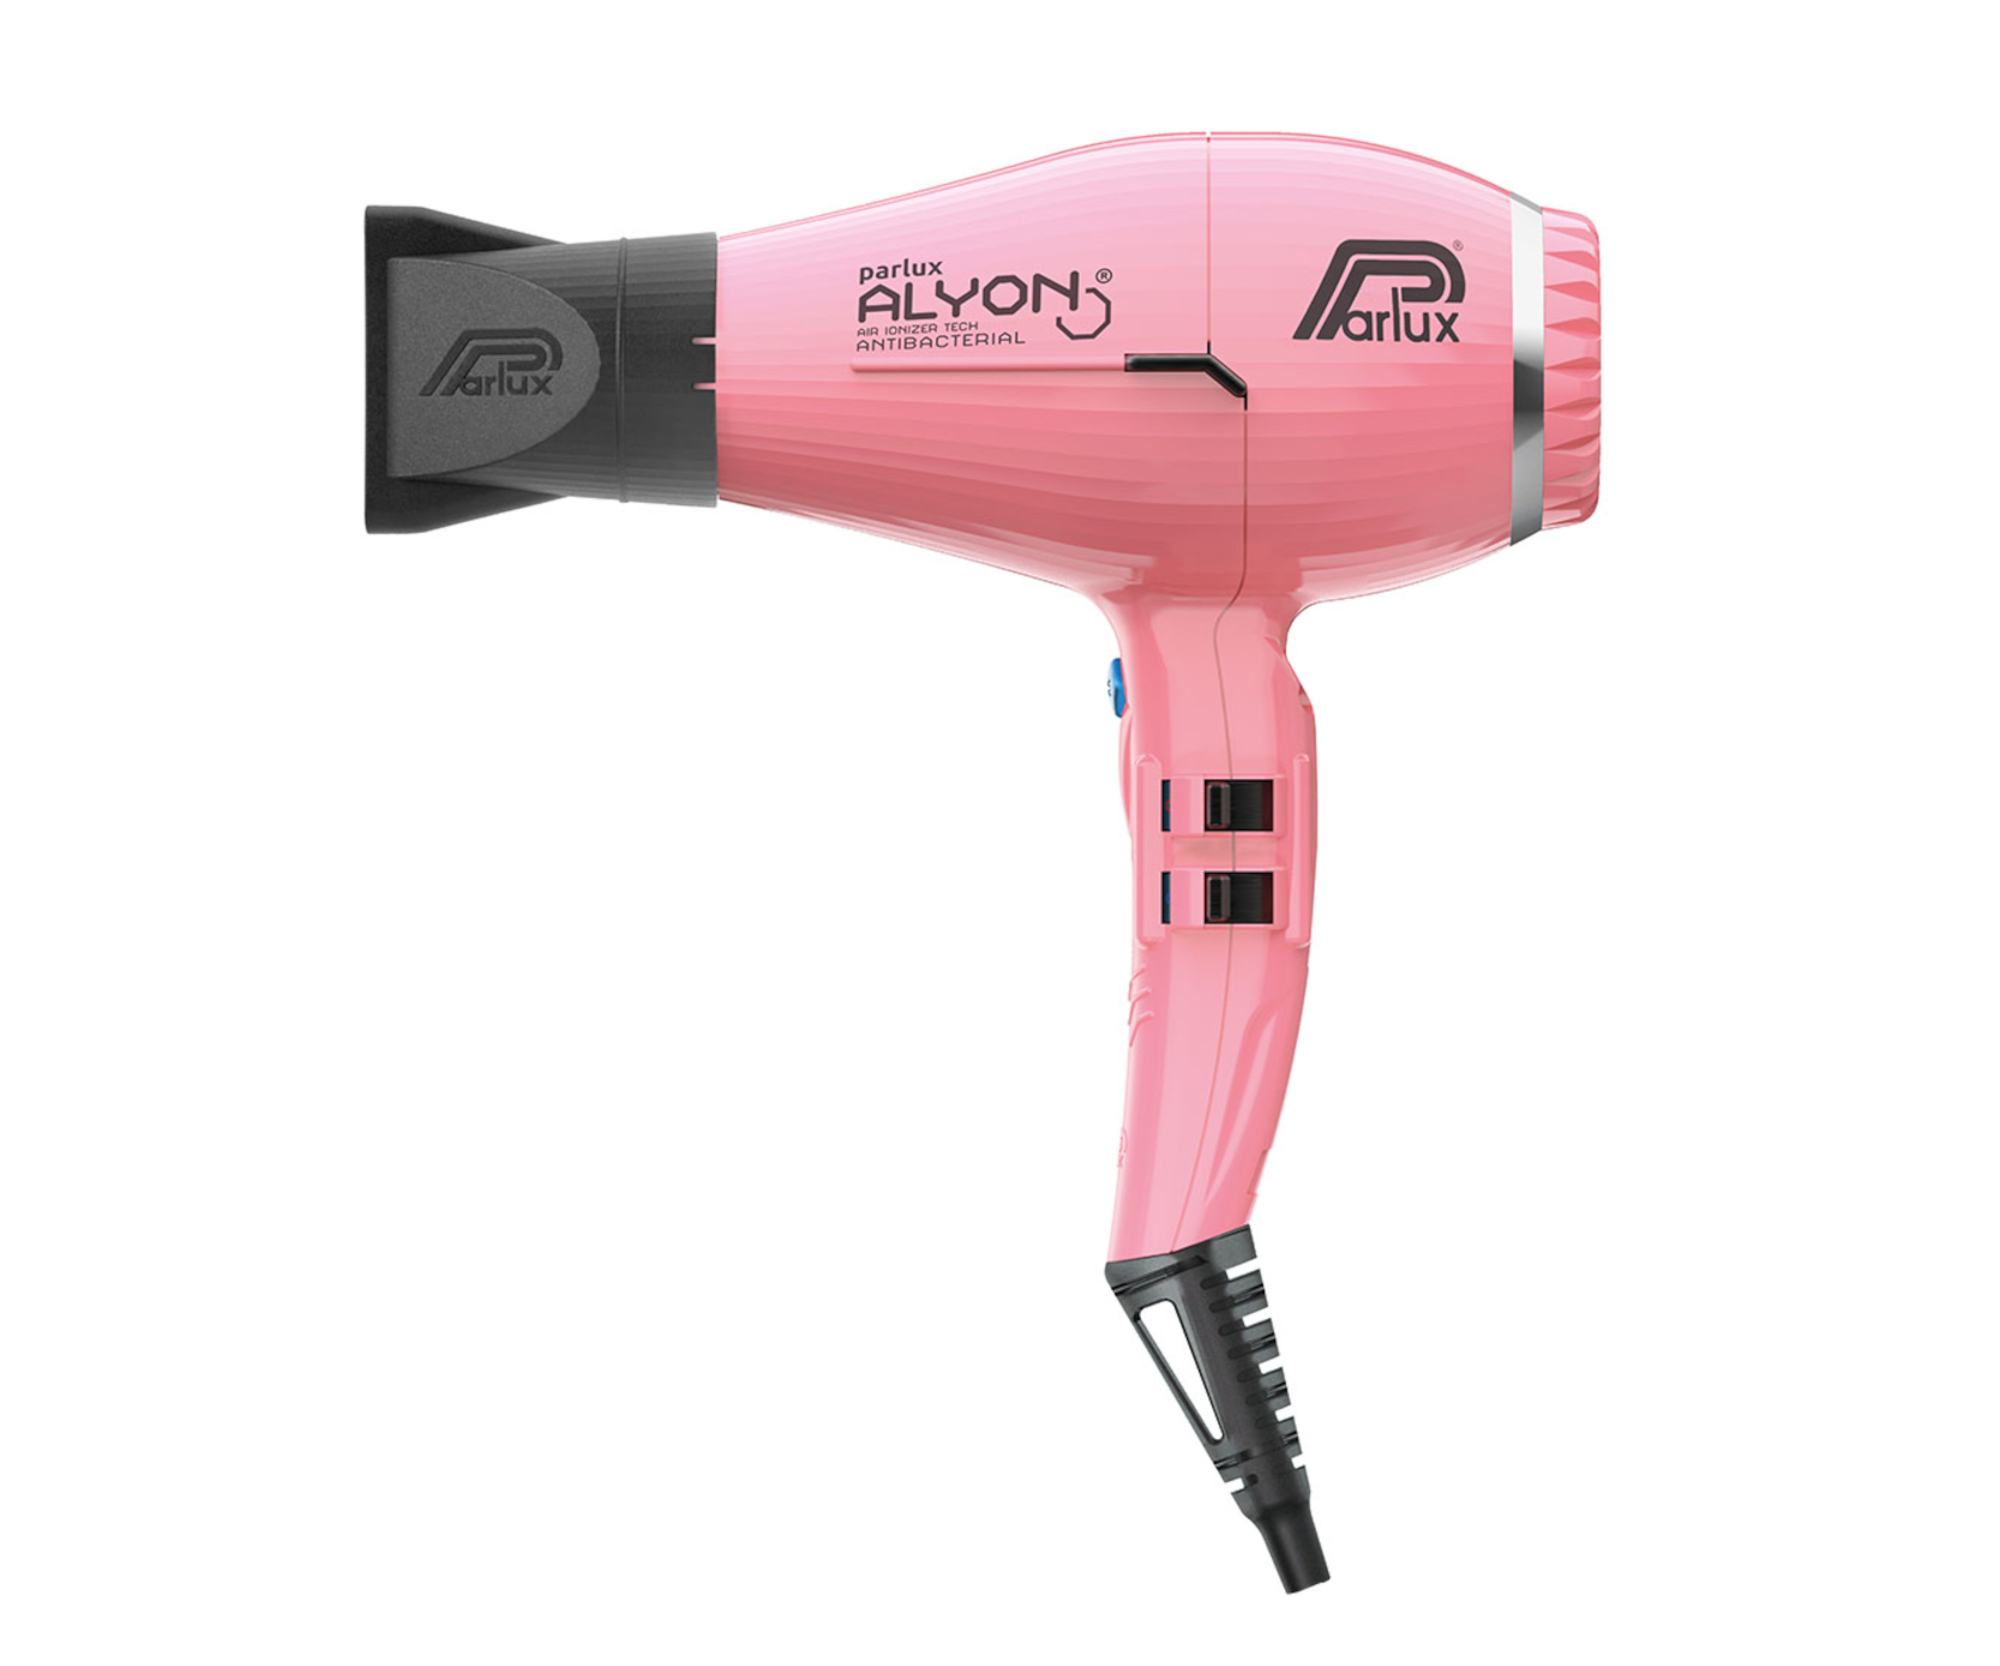 Profesionální fén na vlasy Parlux Alyon Air Ionizer Tech - 2250 W, světle růžový (P ALY-C/2) + DÁREK ZDARMA